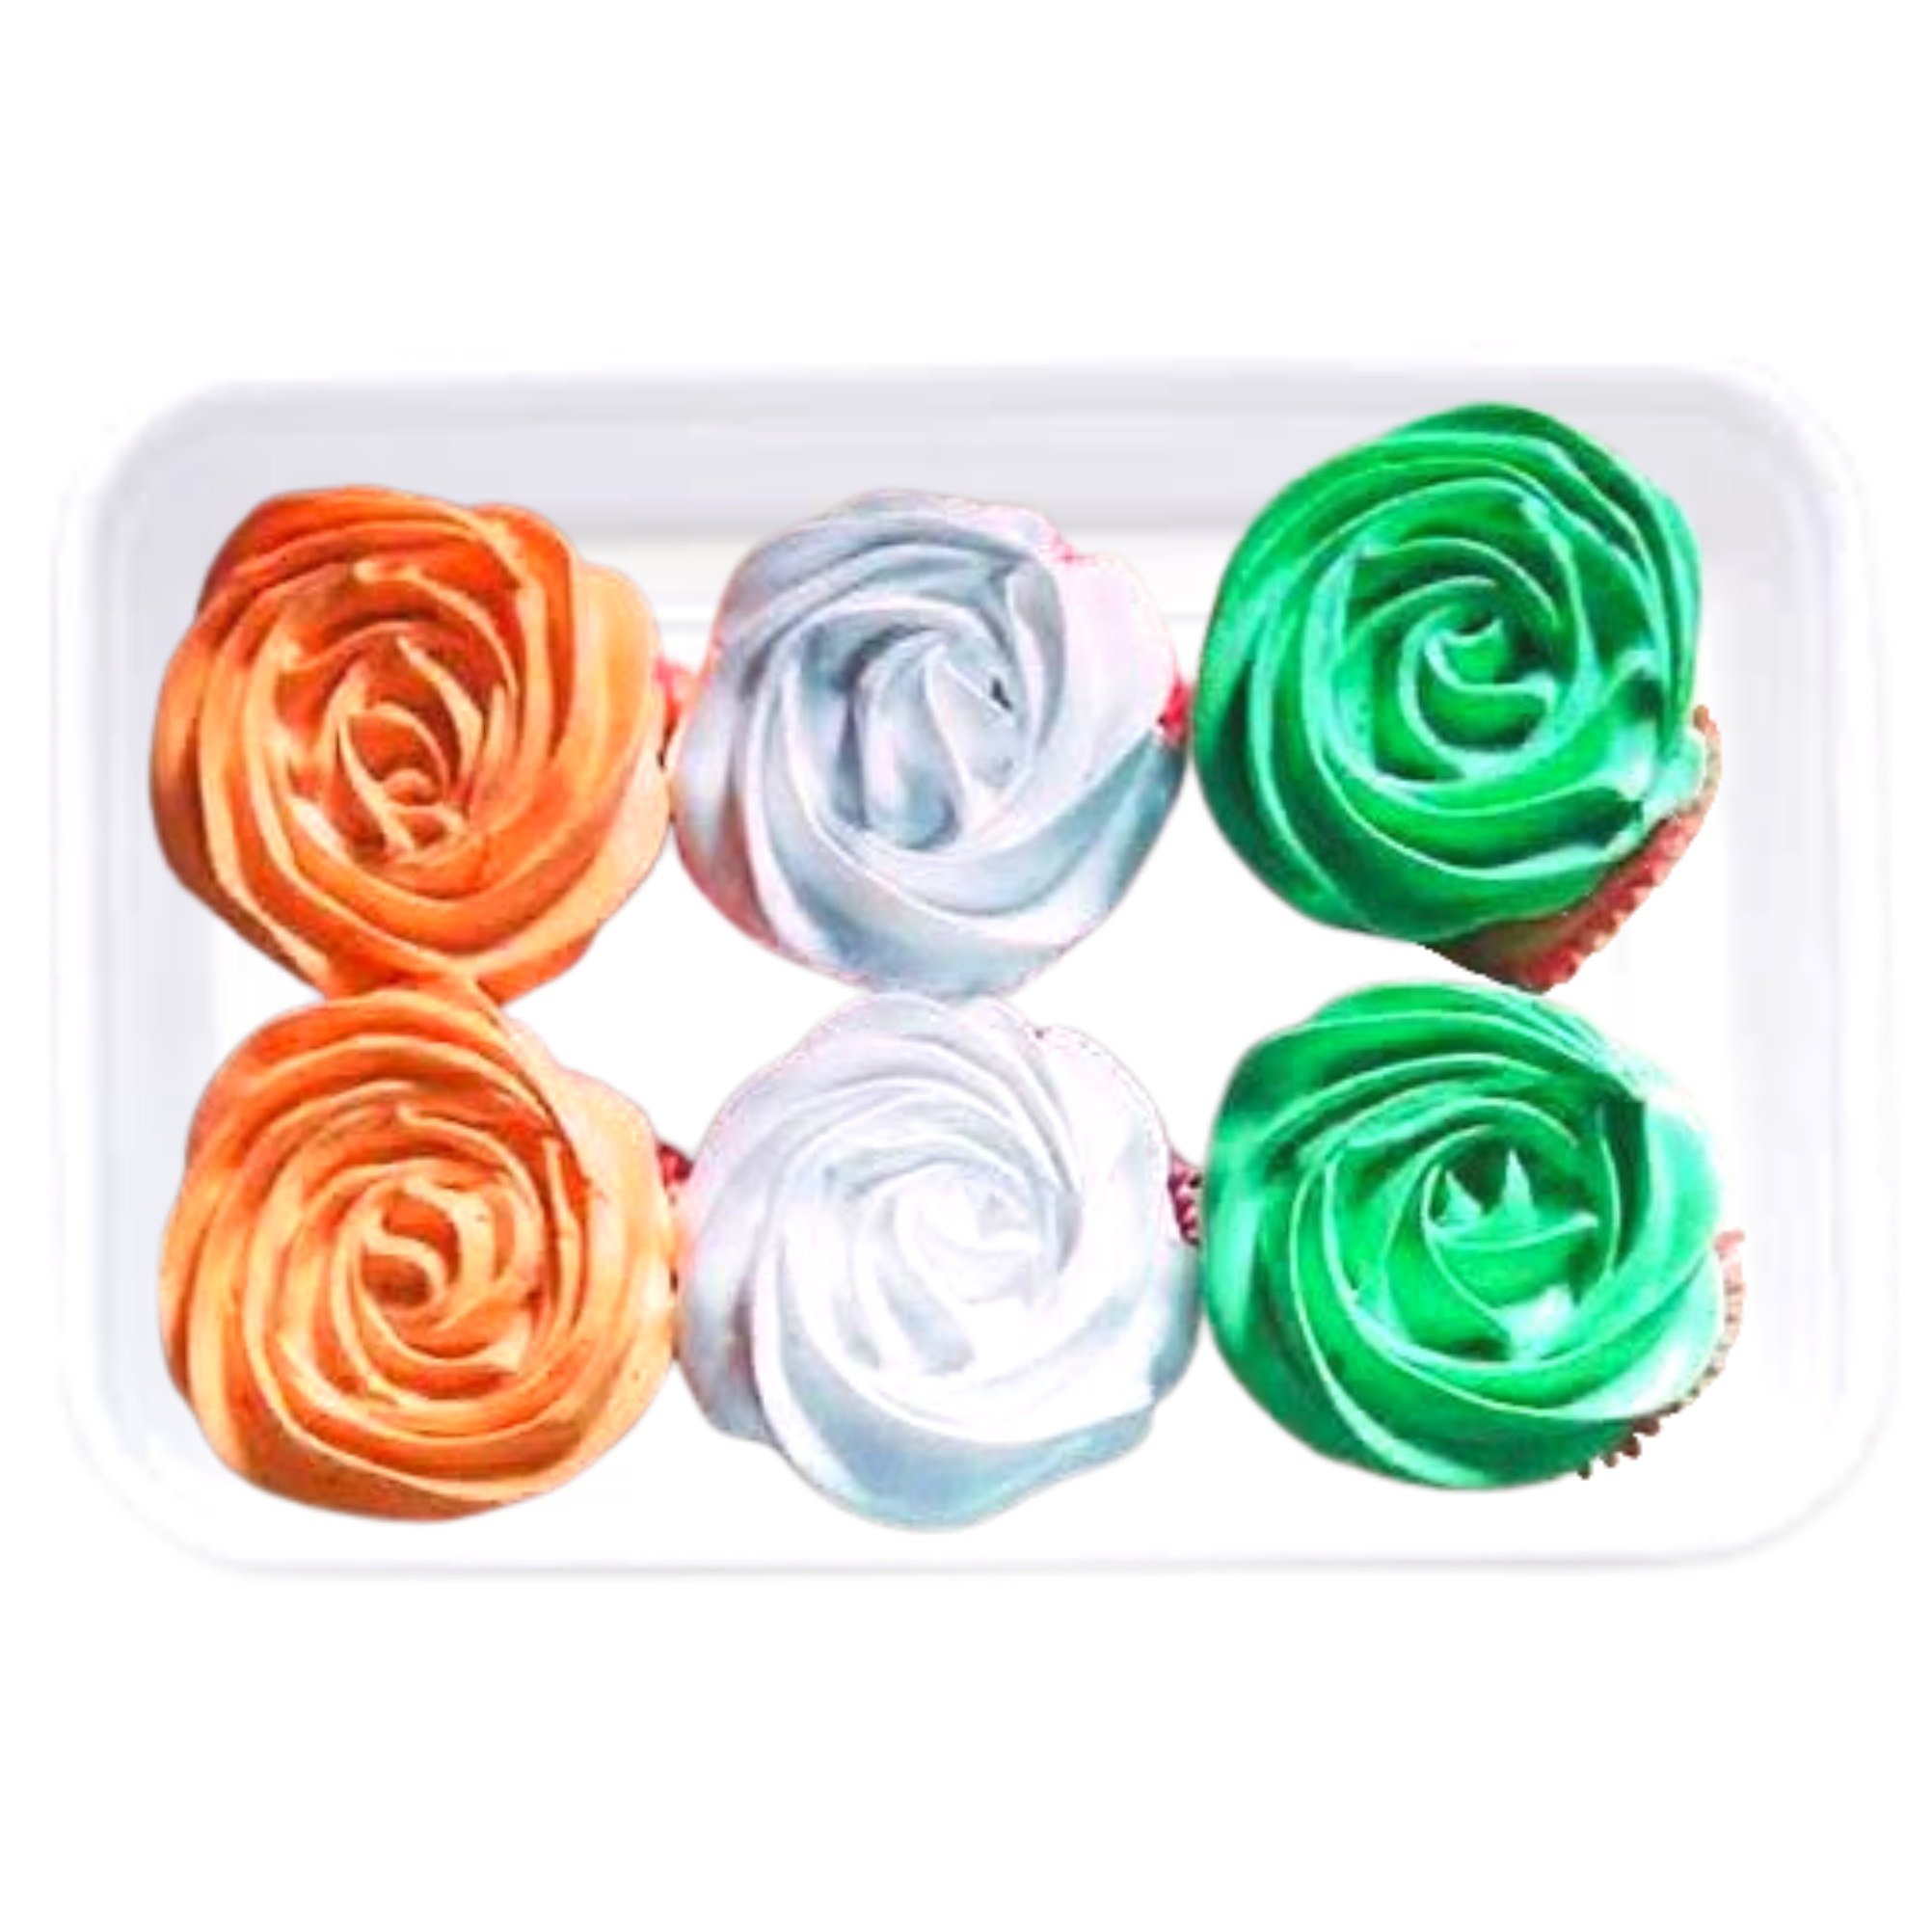 Tricolor Cupcakes online delivery in Noida, Delhi, NCR,
                    Gurgaon